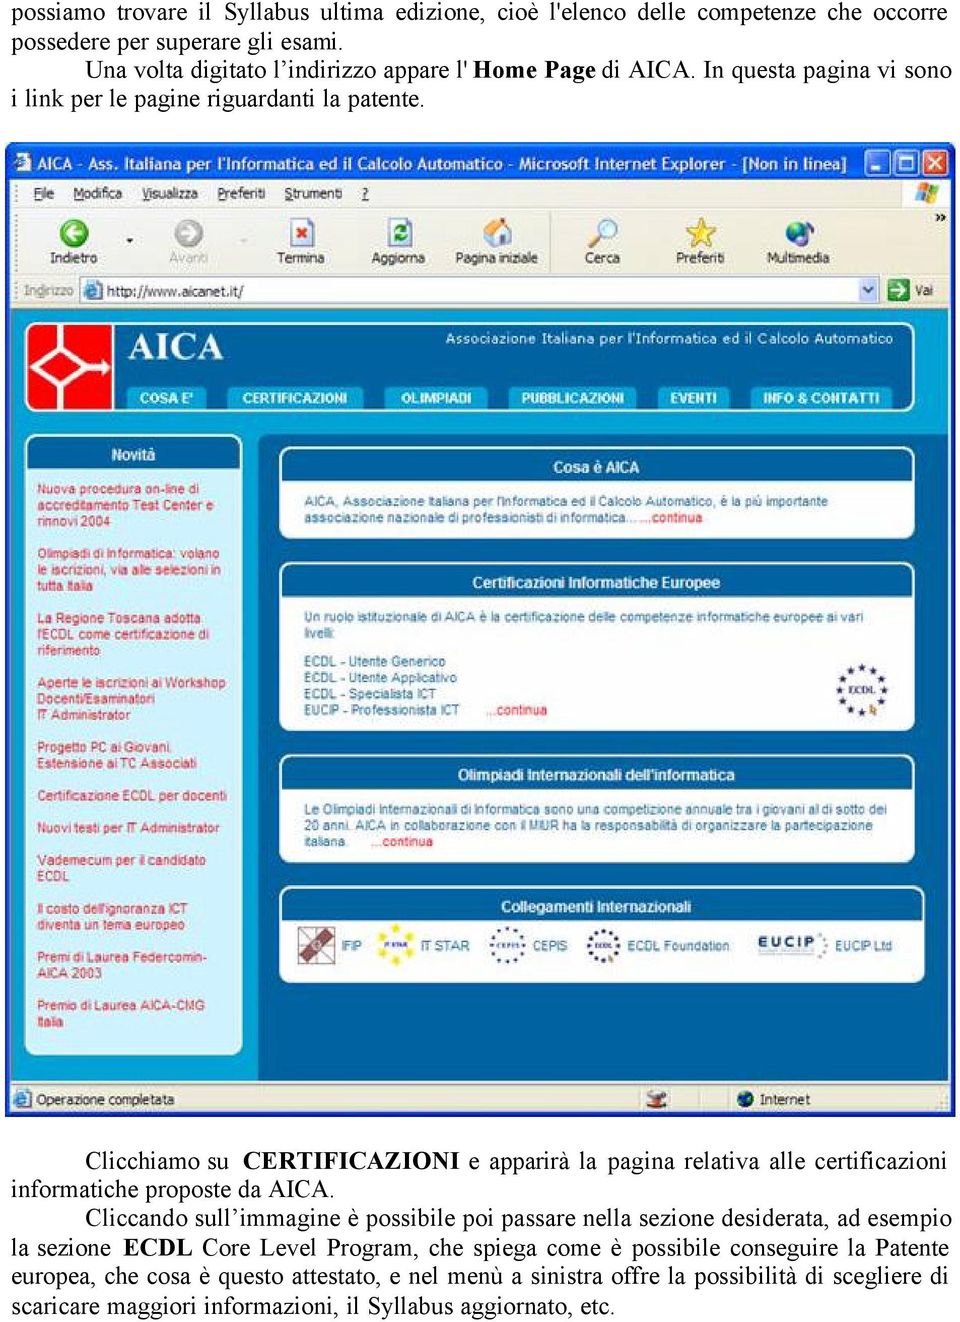 Clicchiamo su CERTIFICAZIONI e apparirà la pagina relativa alle certificazioni informatiche proposte da AICA.